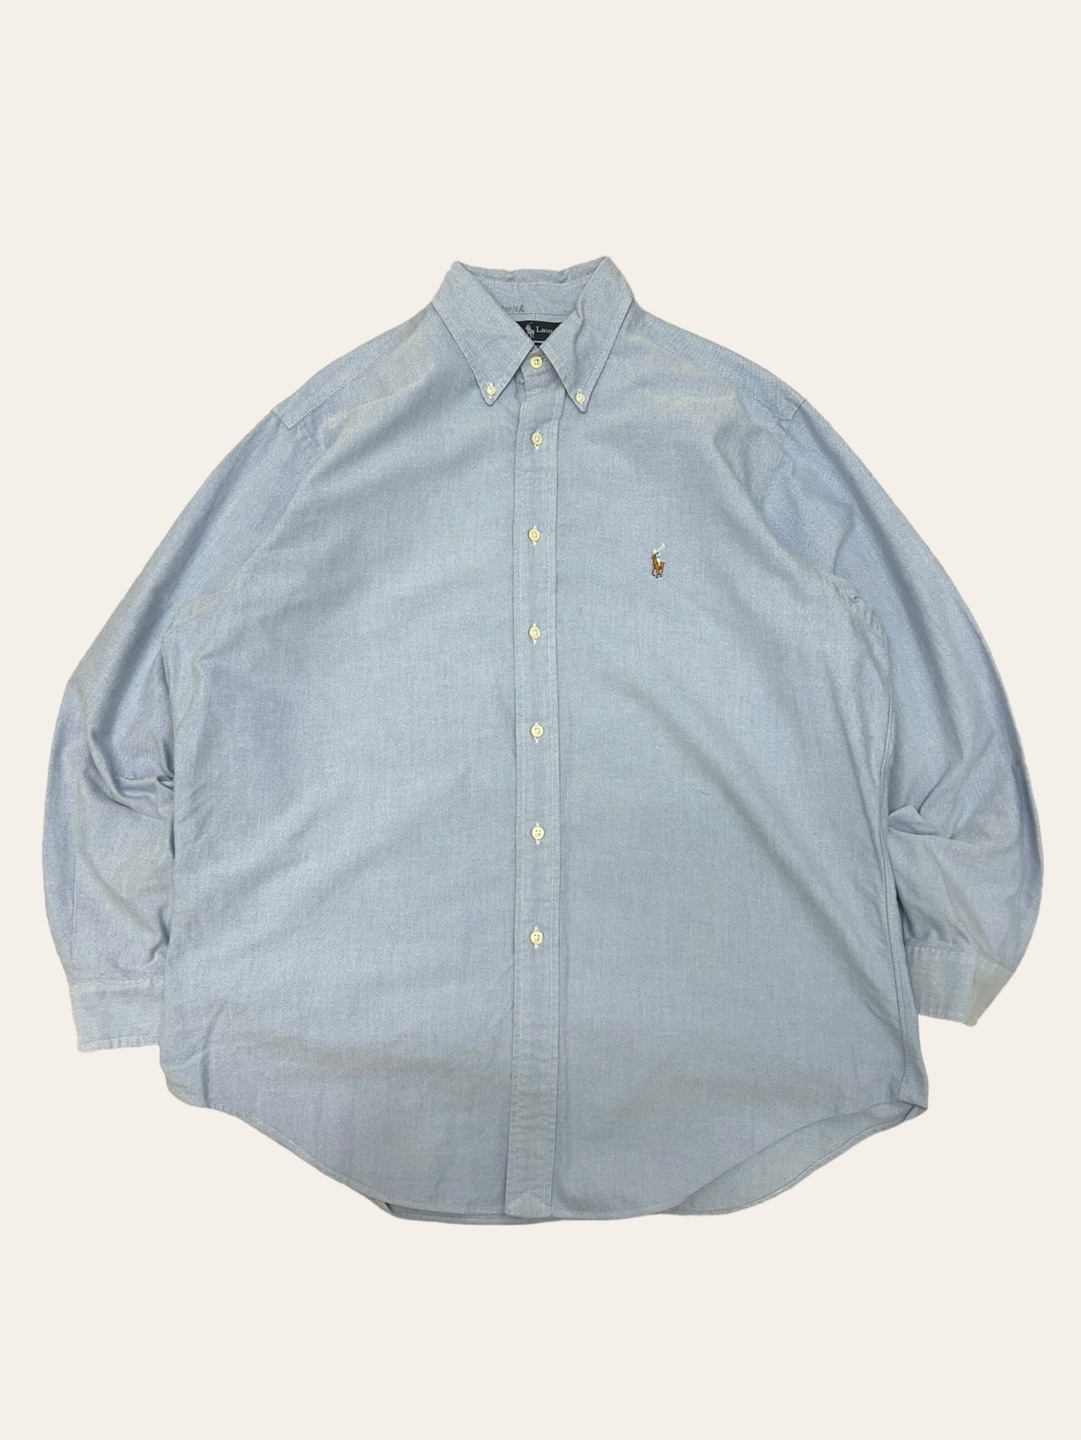 (From USA)Polo ralph lauren blue oxford shirt 16